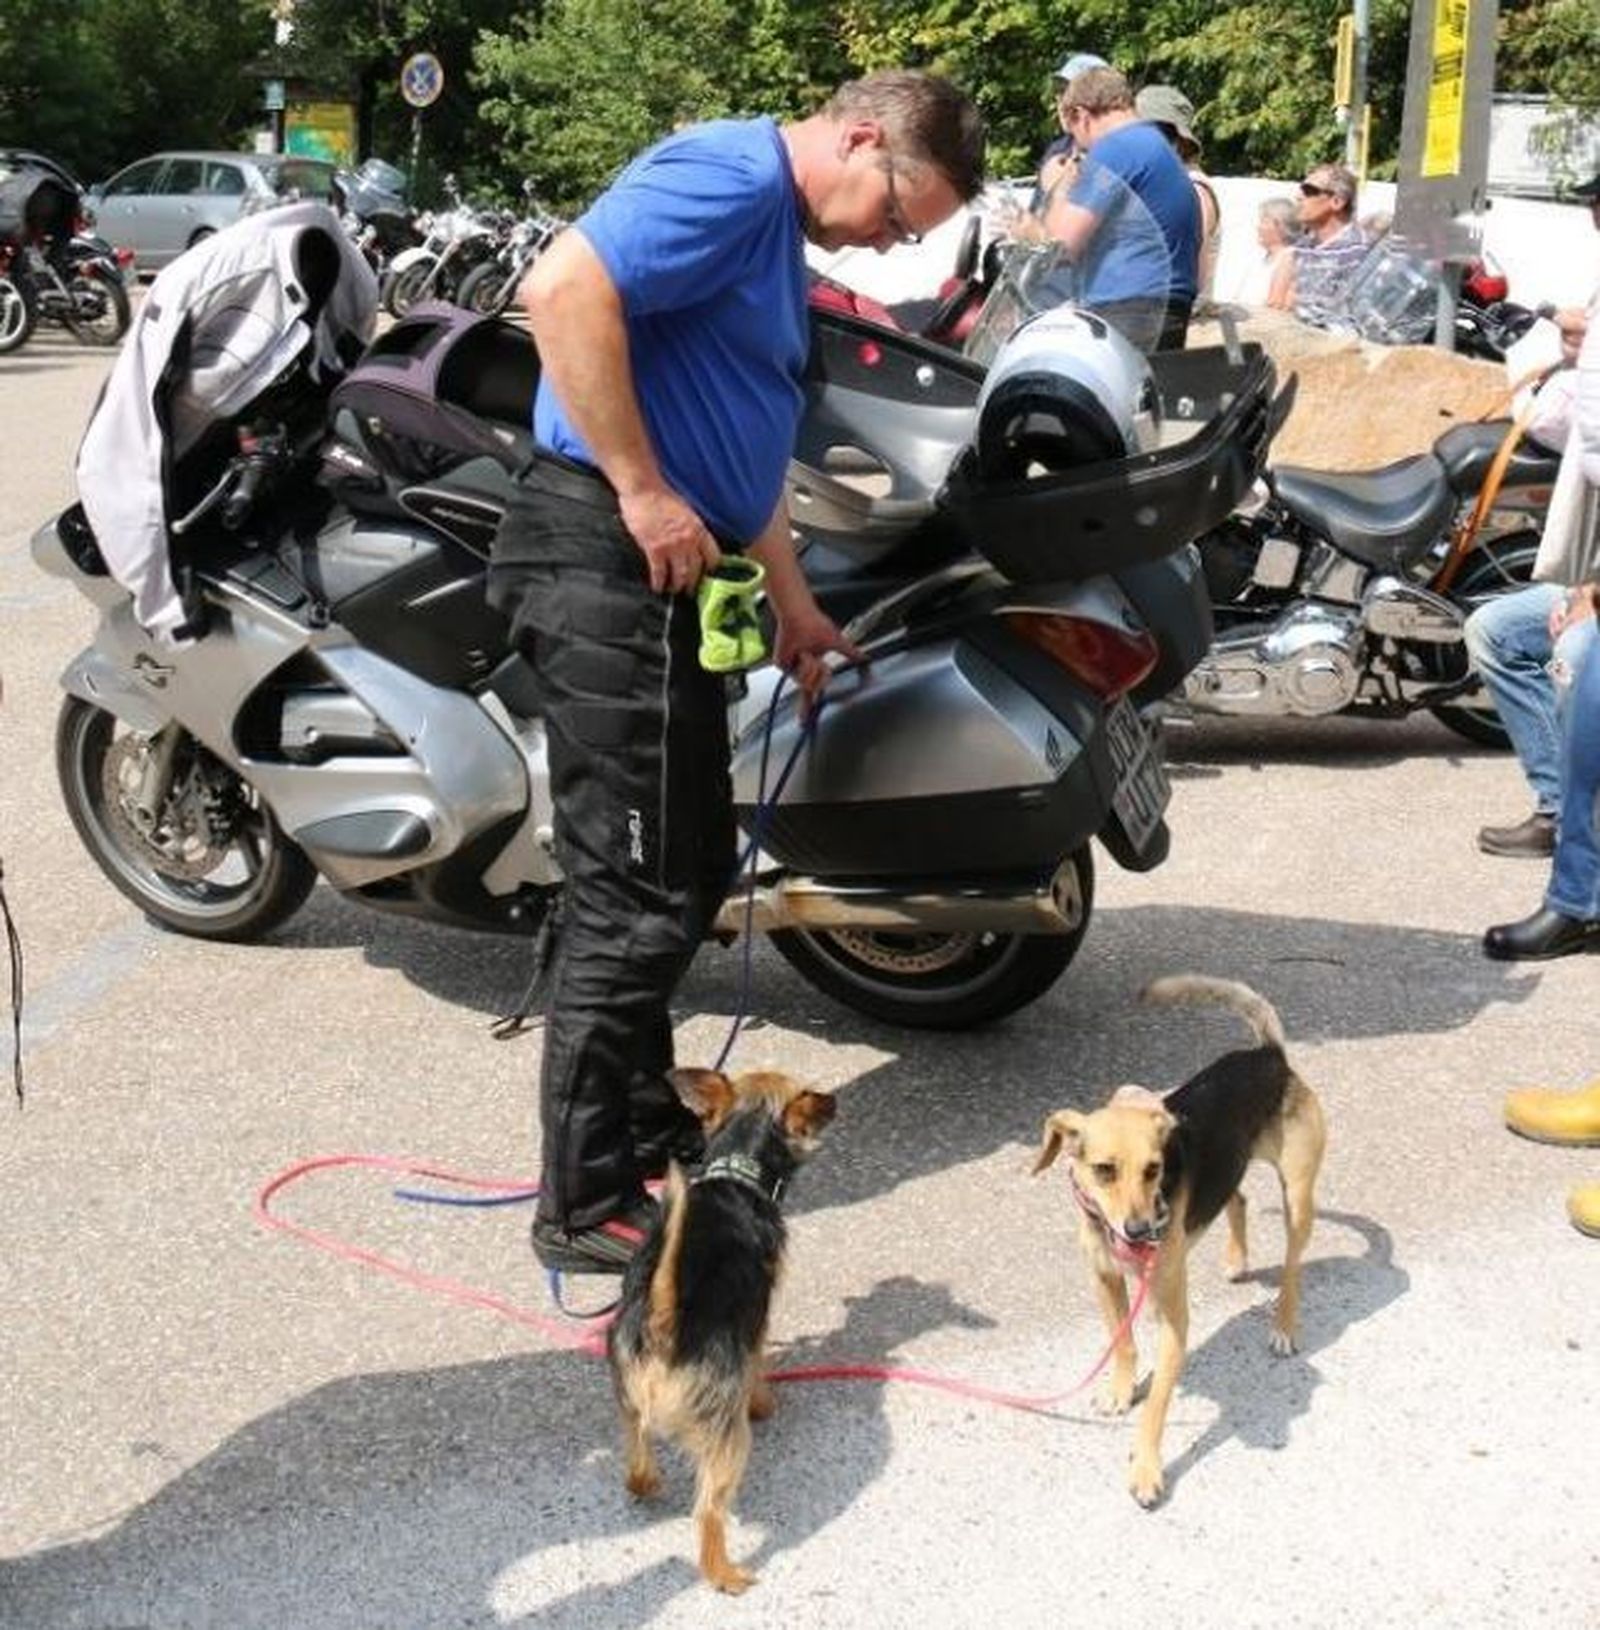 Ein Motorradfahrer steht neben seinem silberfarbenen Motorrad und hat zwei braun-schwarze Hunde an der Leine und macht Rast